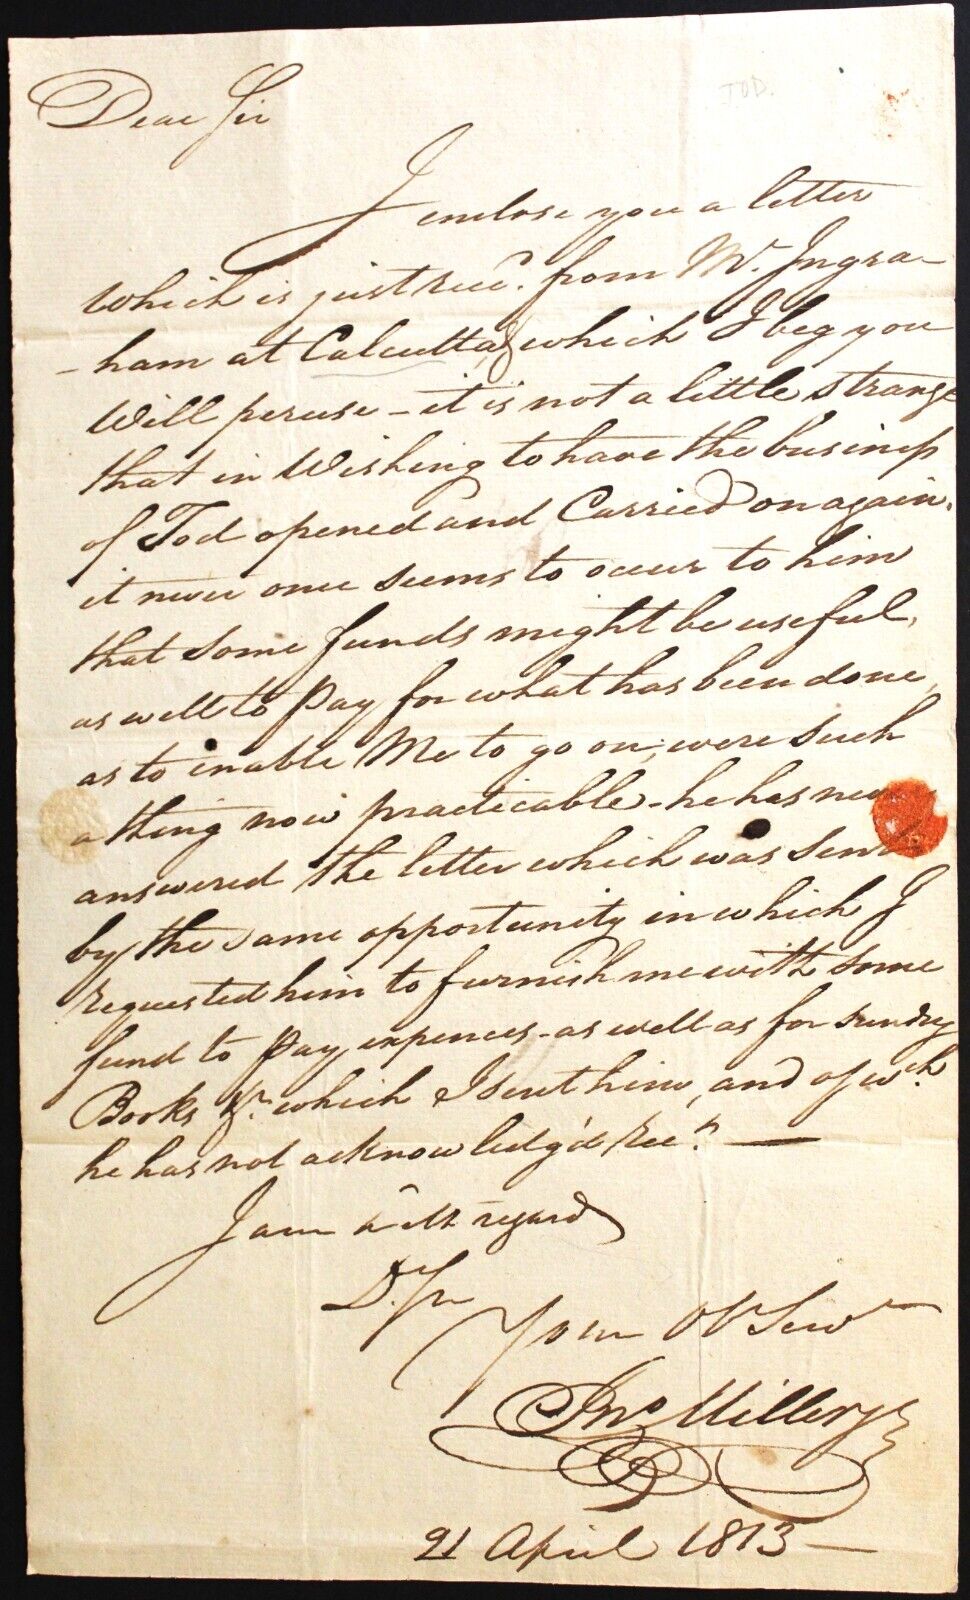 Early American Document - John Miller Jr. - 1813